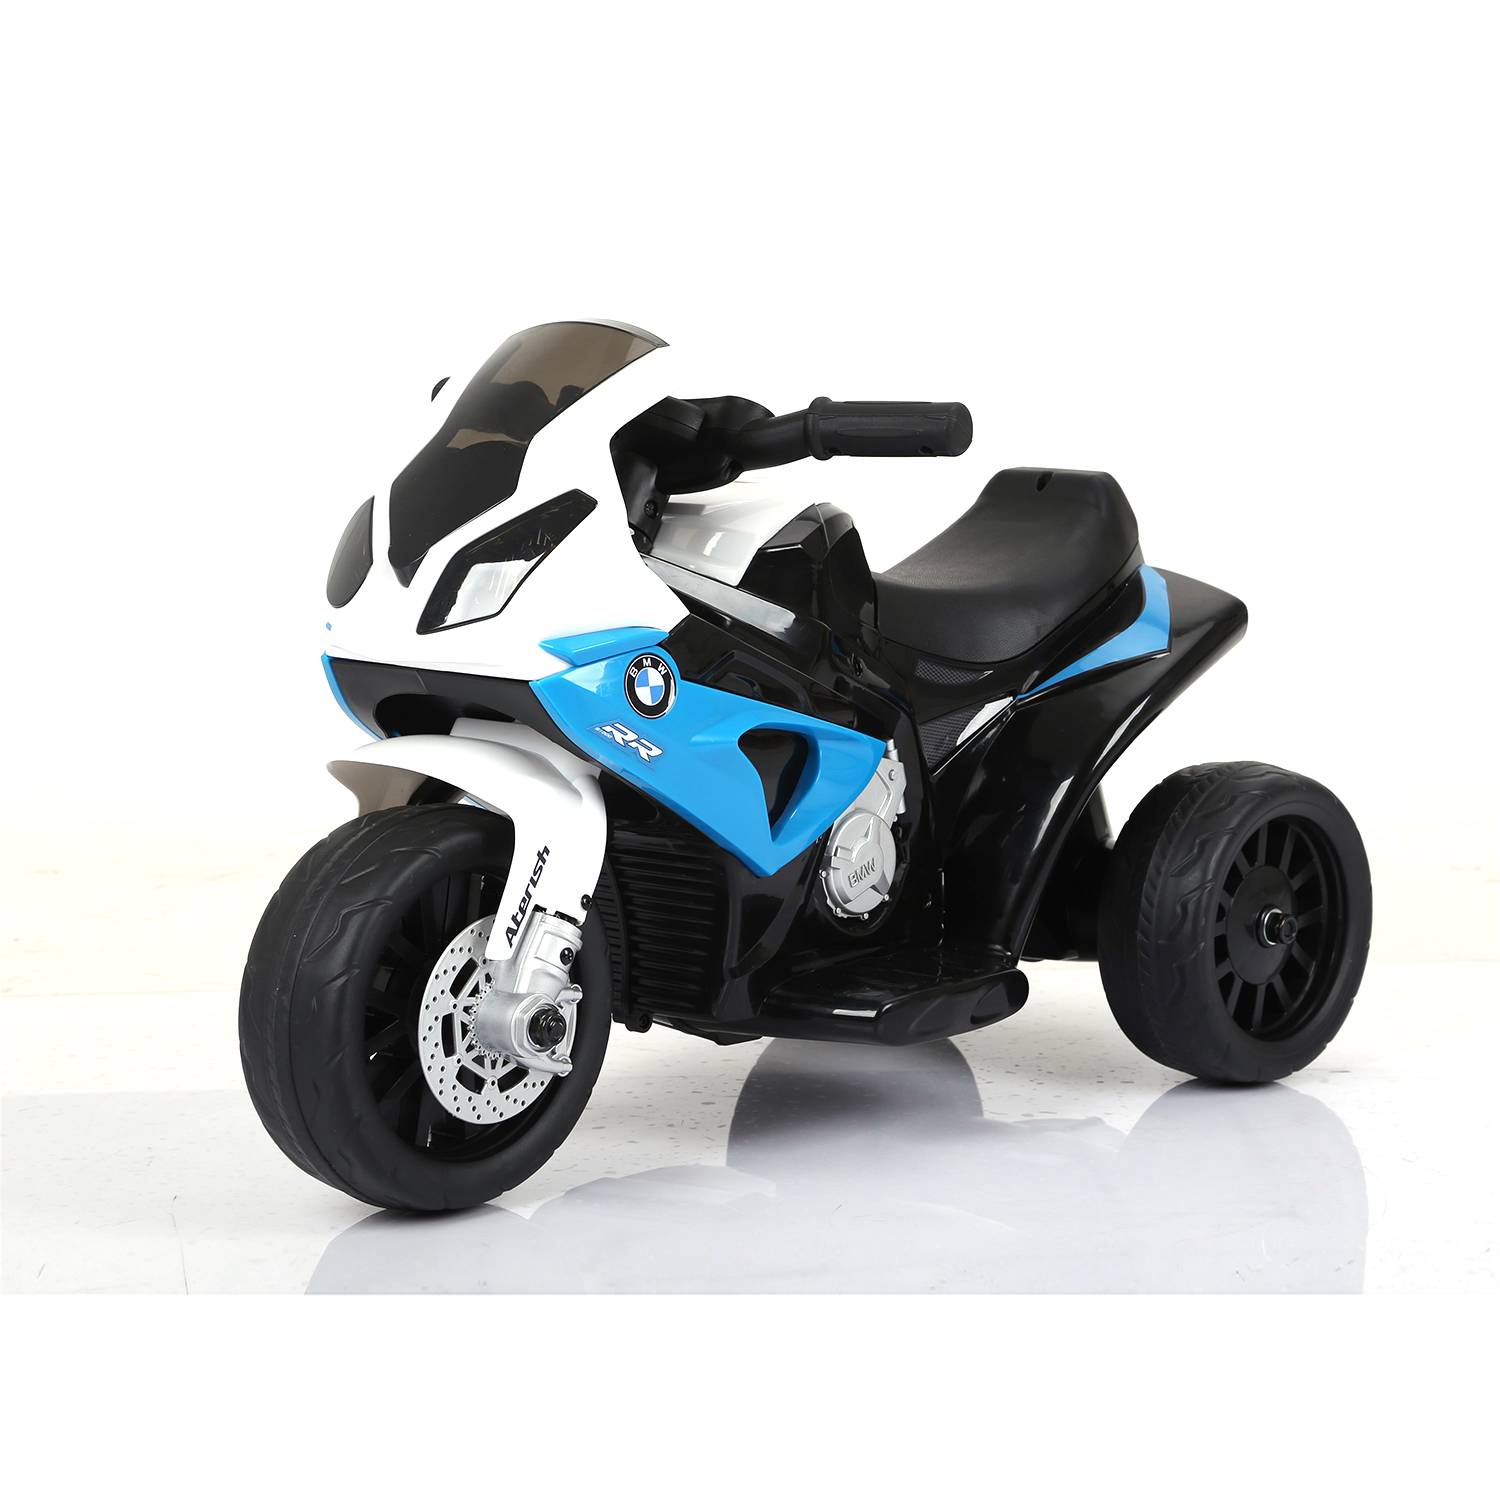 Bateria 6 v moto juguete